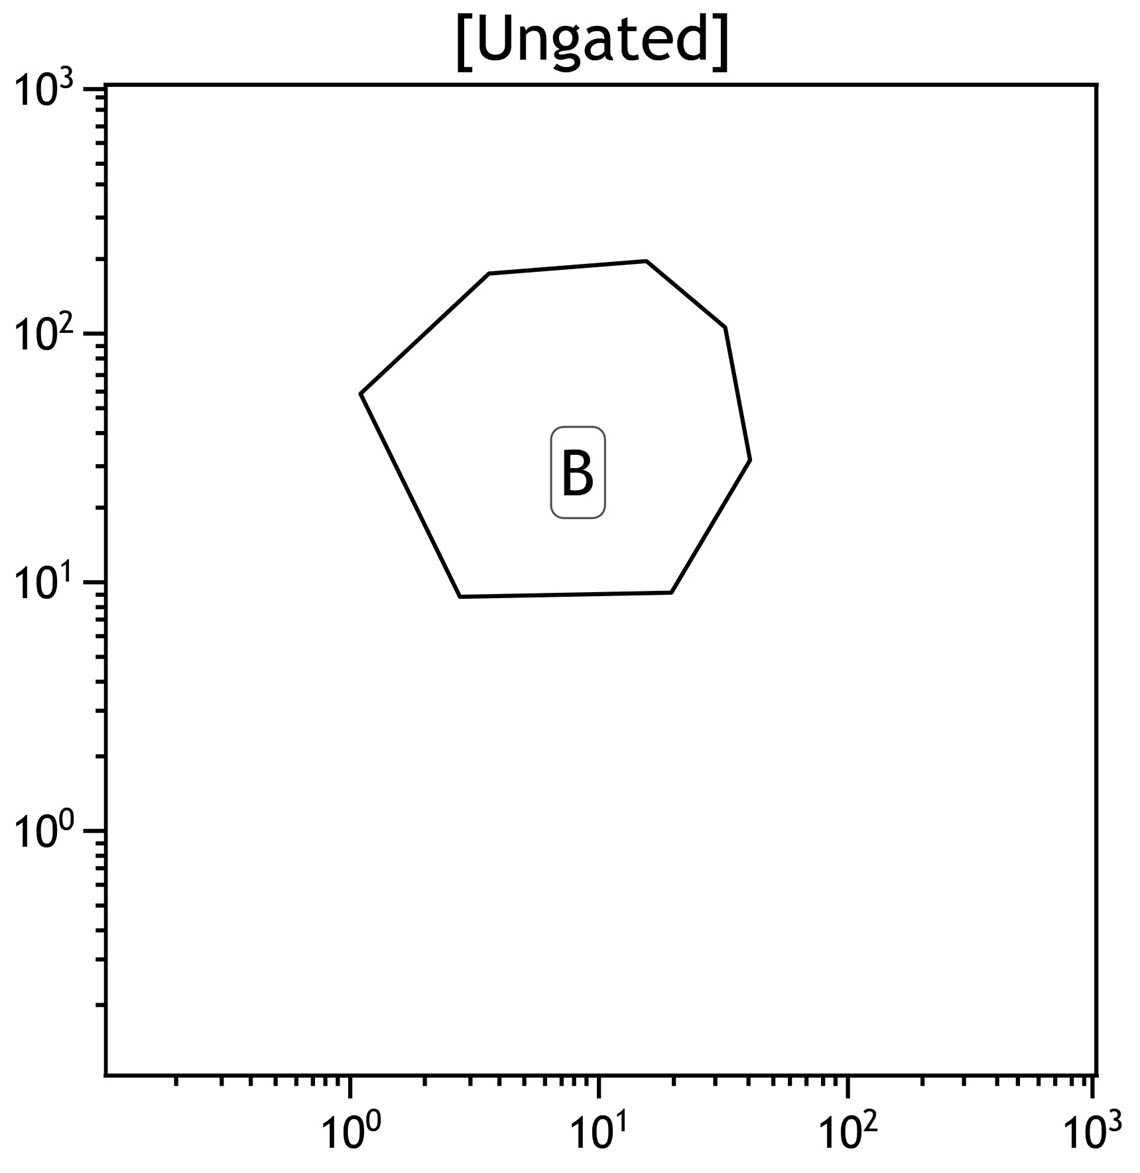 Kaluza plot showing a polygon gate applied